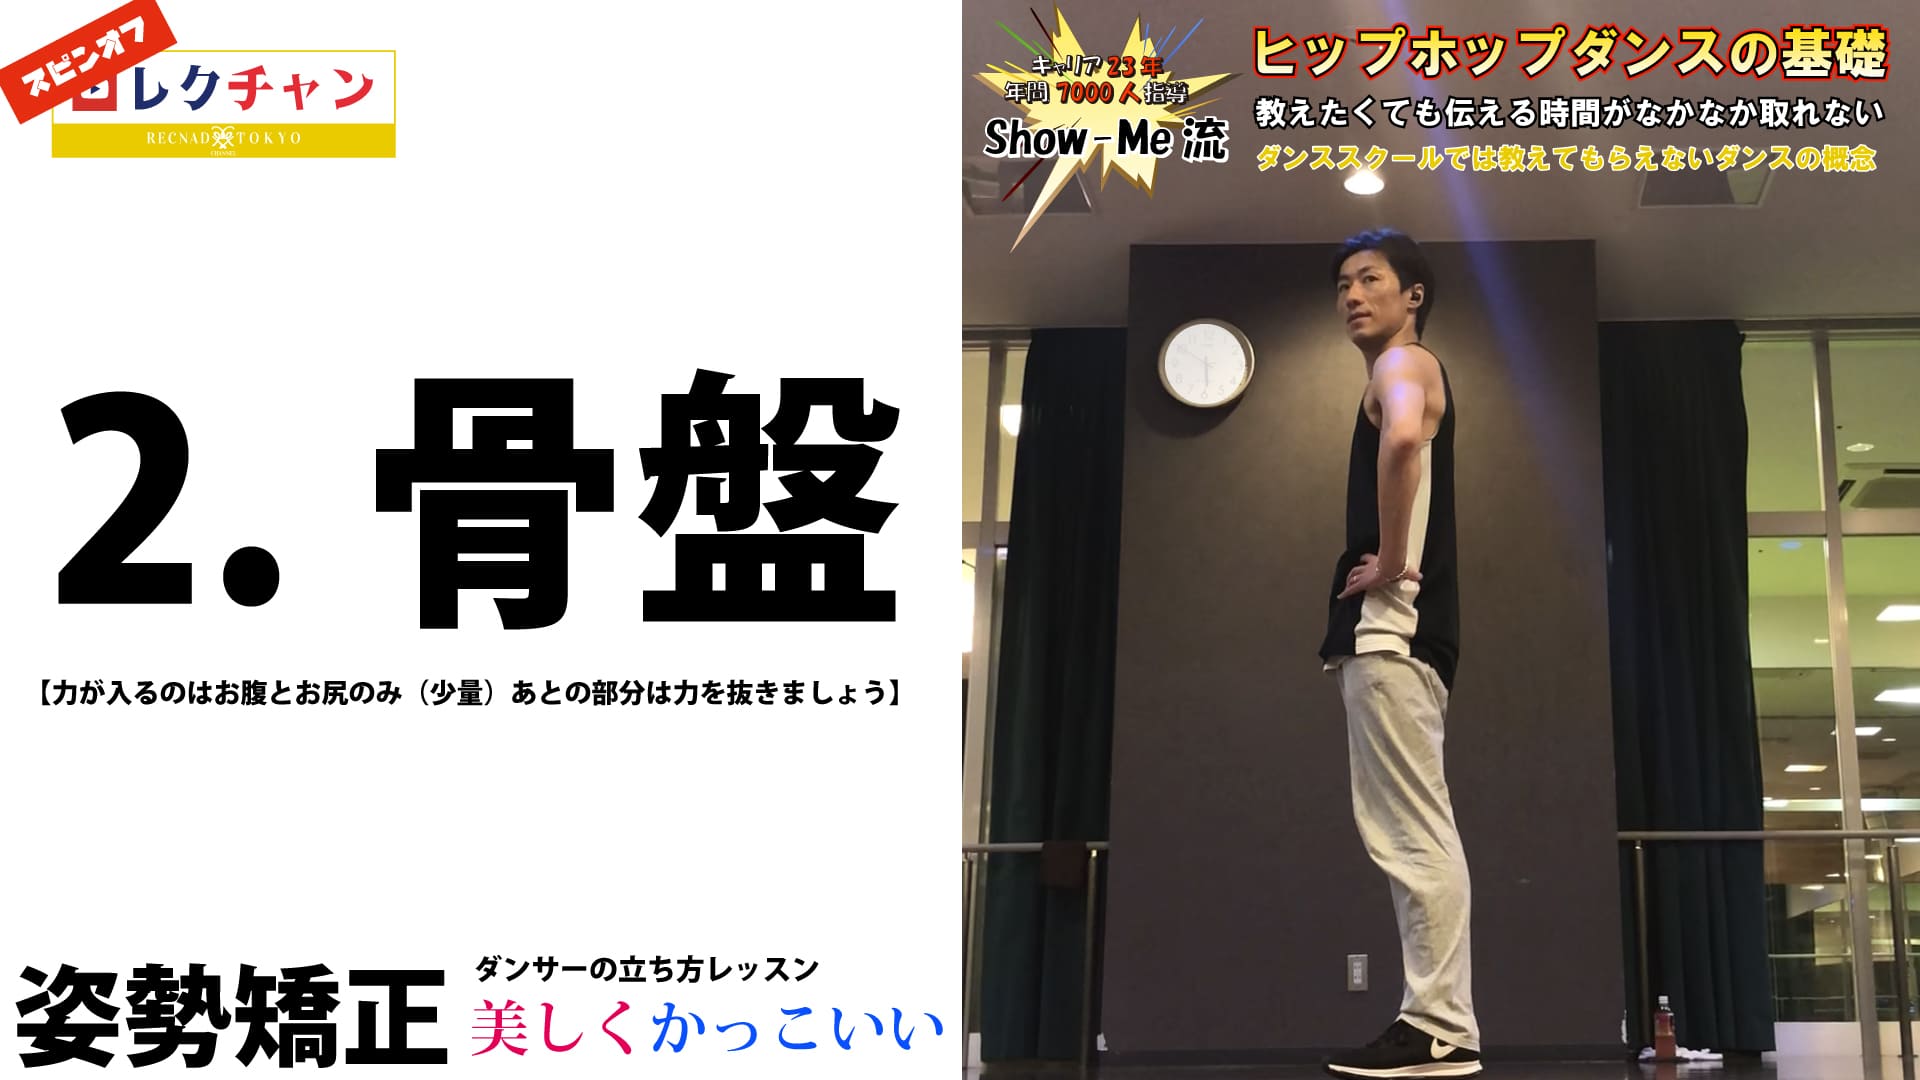 骨盤 姿勢矯正 改善 美しく かっこいい ダンサーの立ち方 レッスン 株式会社 Recnad Tokyo ダンス のお仕事何でもやります